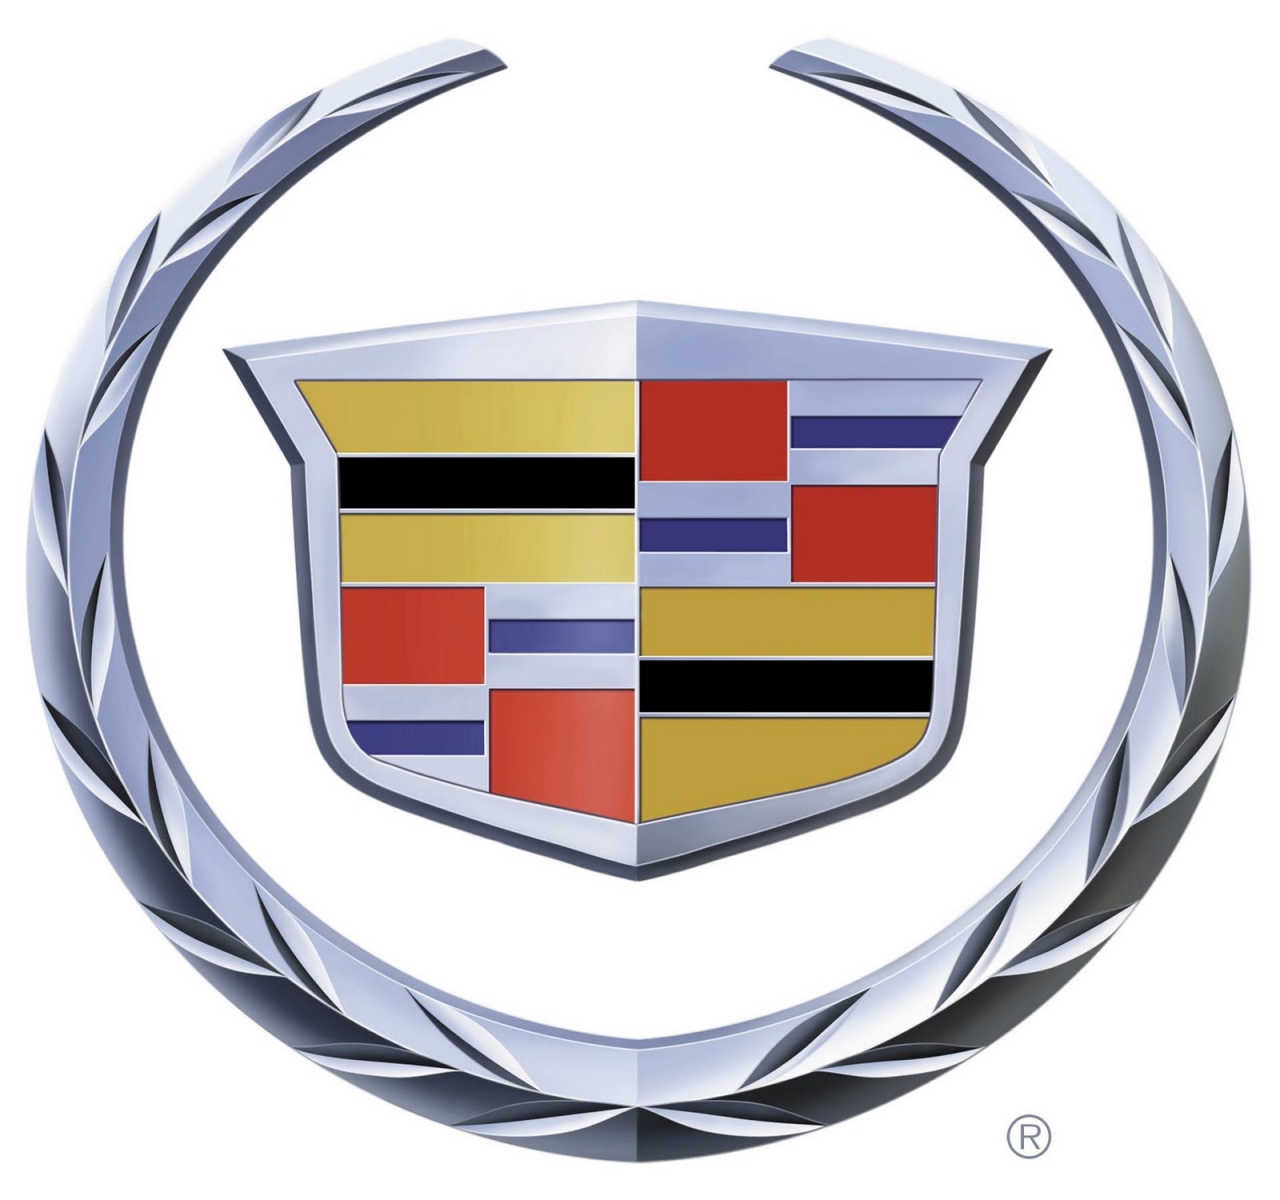 Logotipo de Cadillac Fondos de pantalla HD | Imágenes de fondo | Fotos |  Imágenes – YL Computing